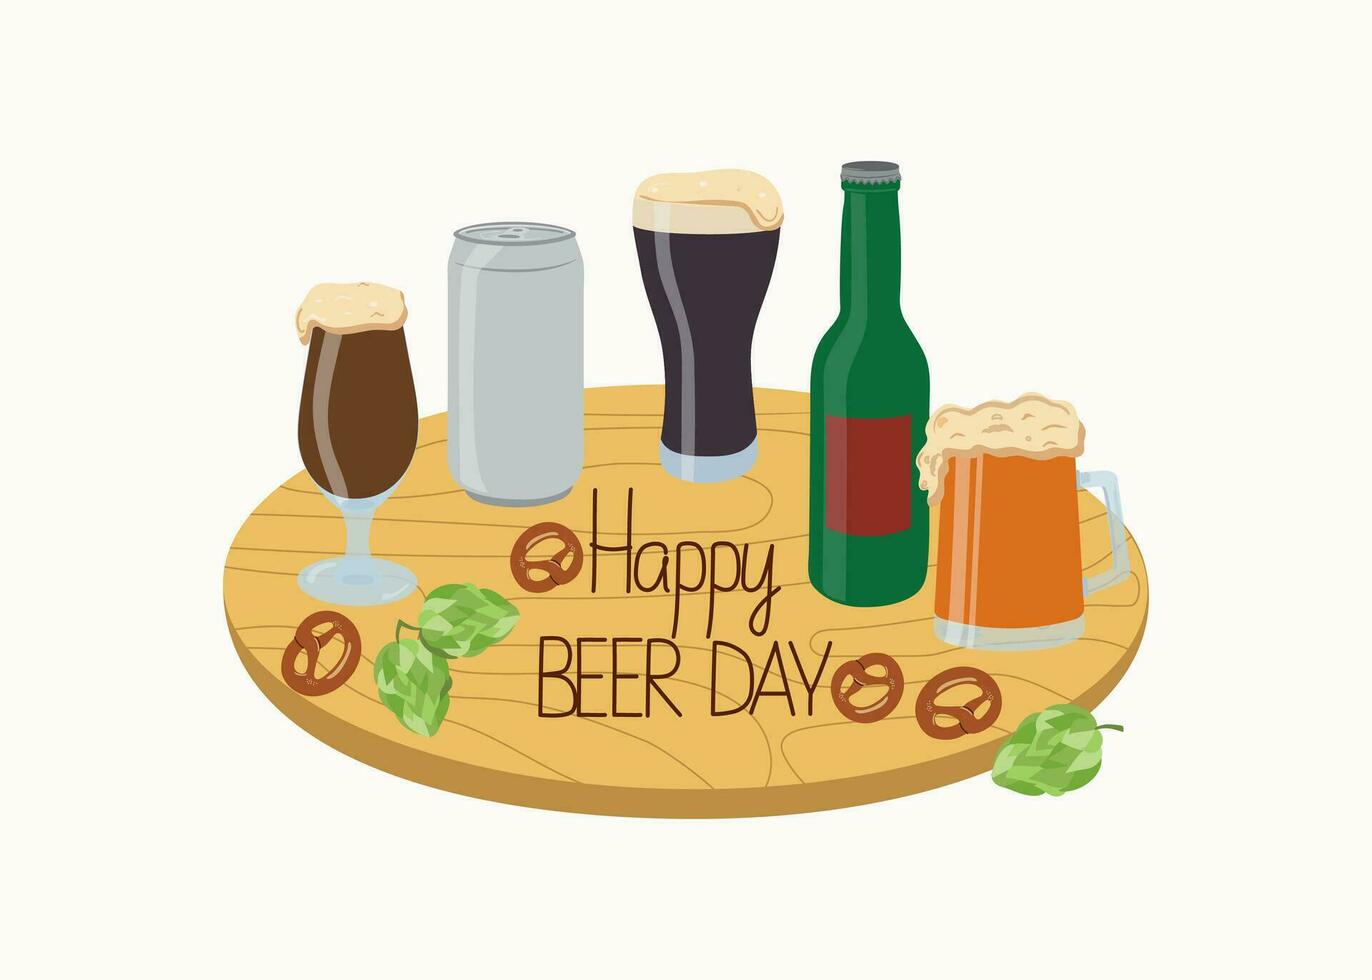 bier dag, festival, vakantie. Oktoberfest. houten teken met belettering versierd met bier artikelen, bier in een fles, kan, mok. hop kegels. vector illustratie, achtergrond geïsoleerd.